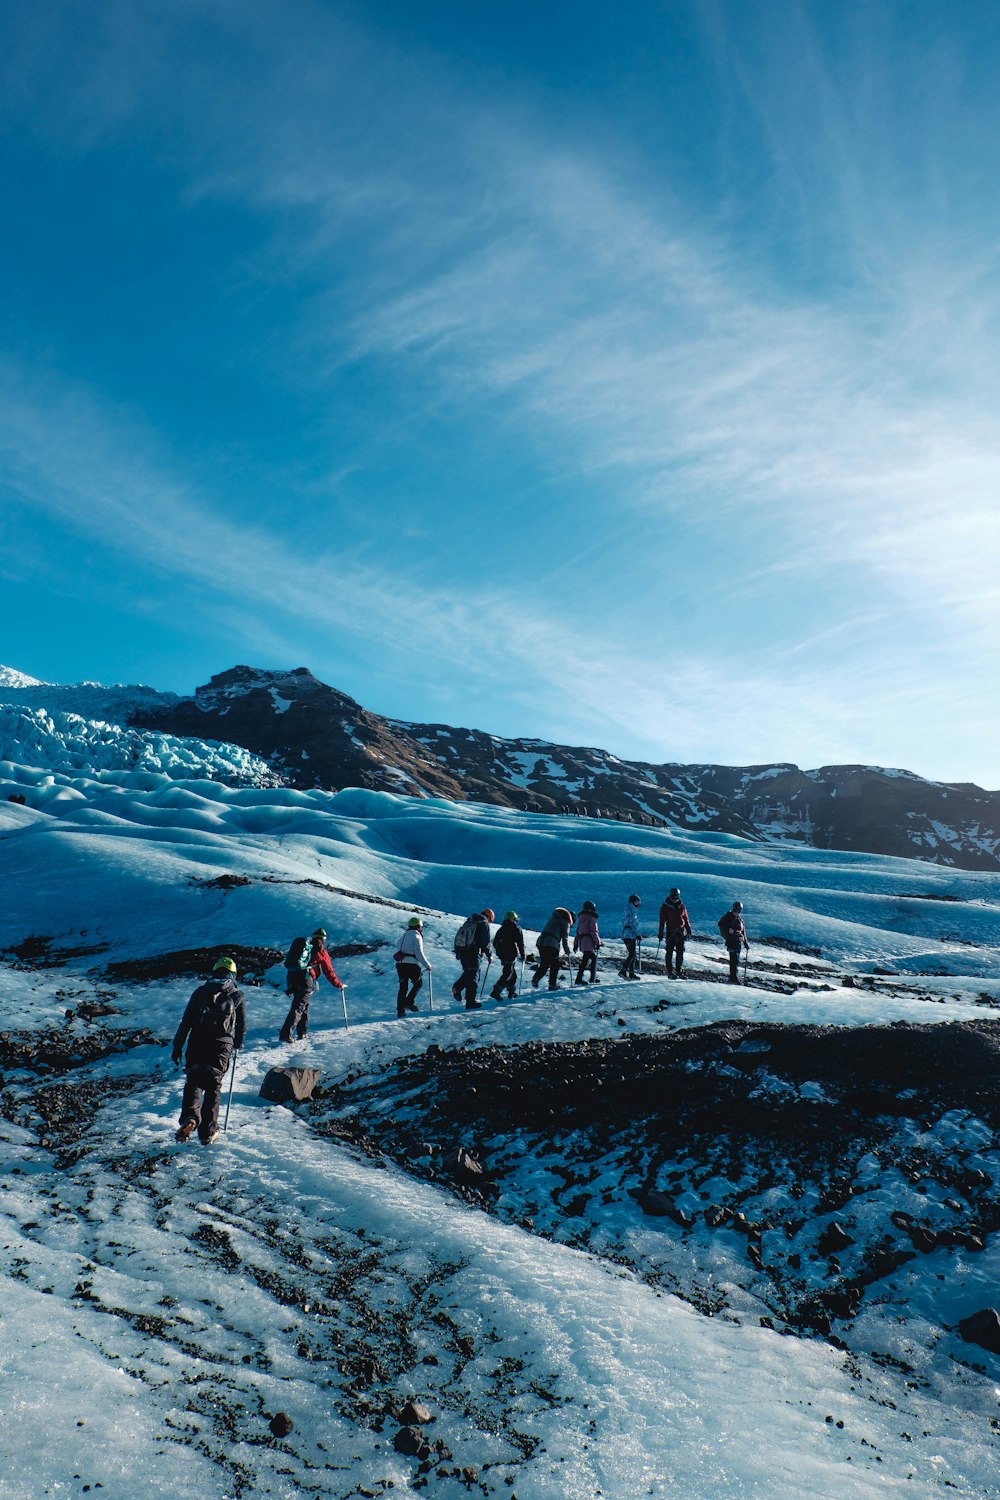 Un grupo de personas subiendo una colina cubierta de nieve